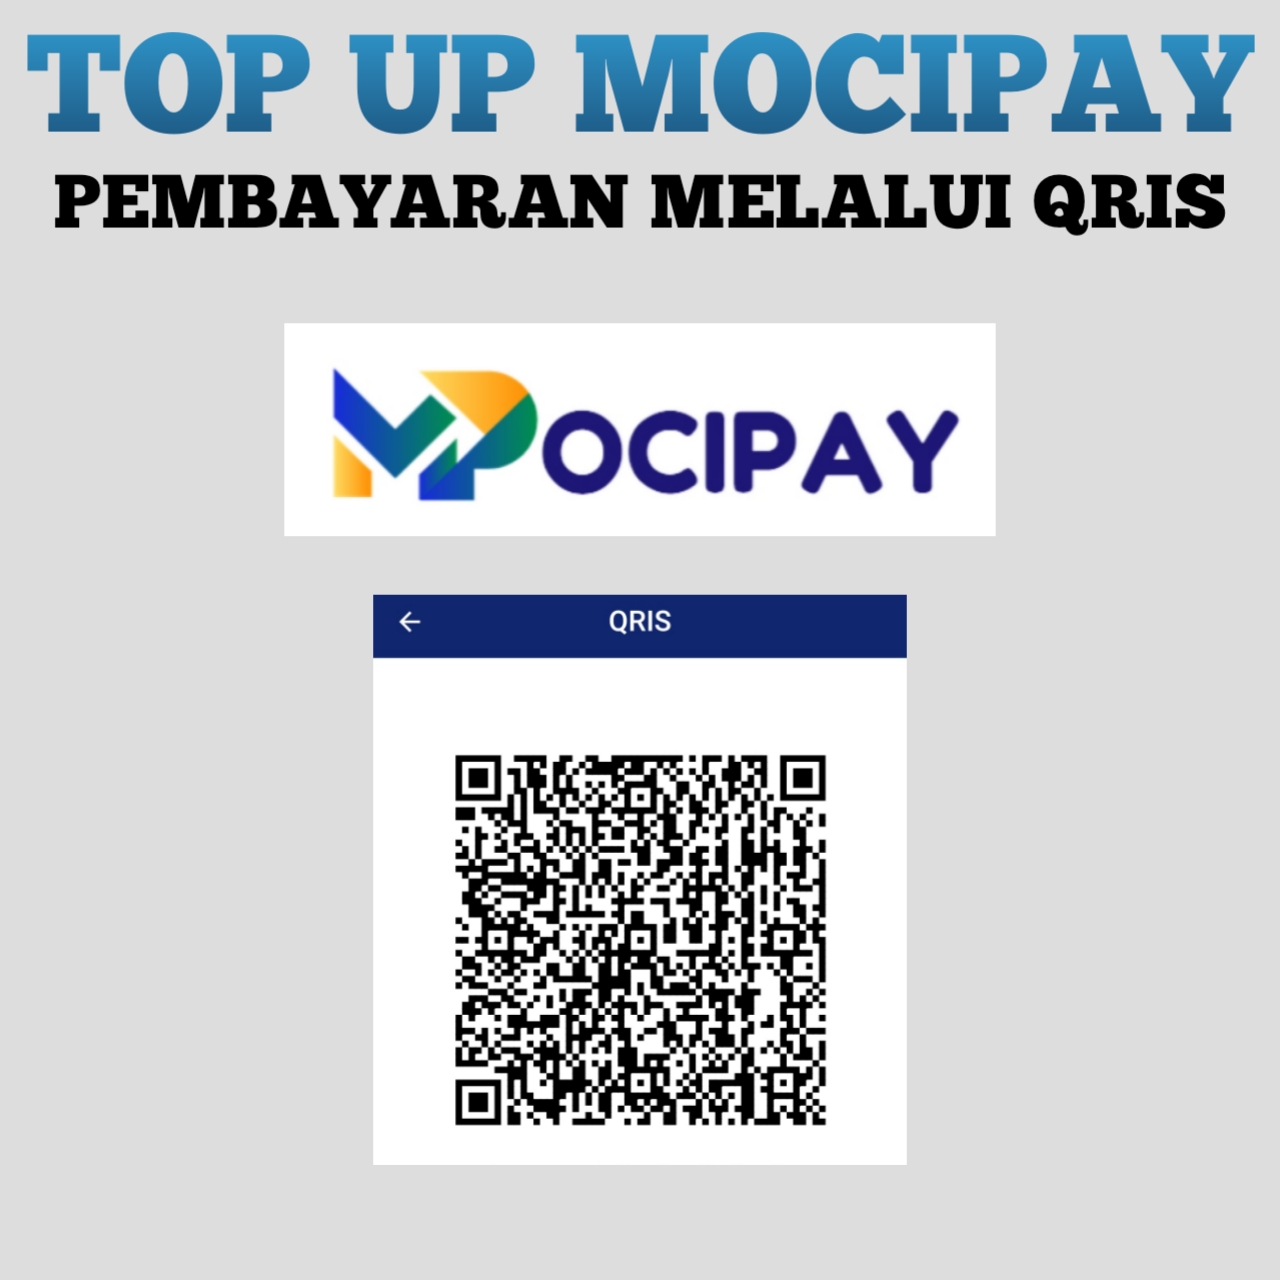 Pembayaran Mocipay melalui QRIS